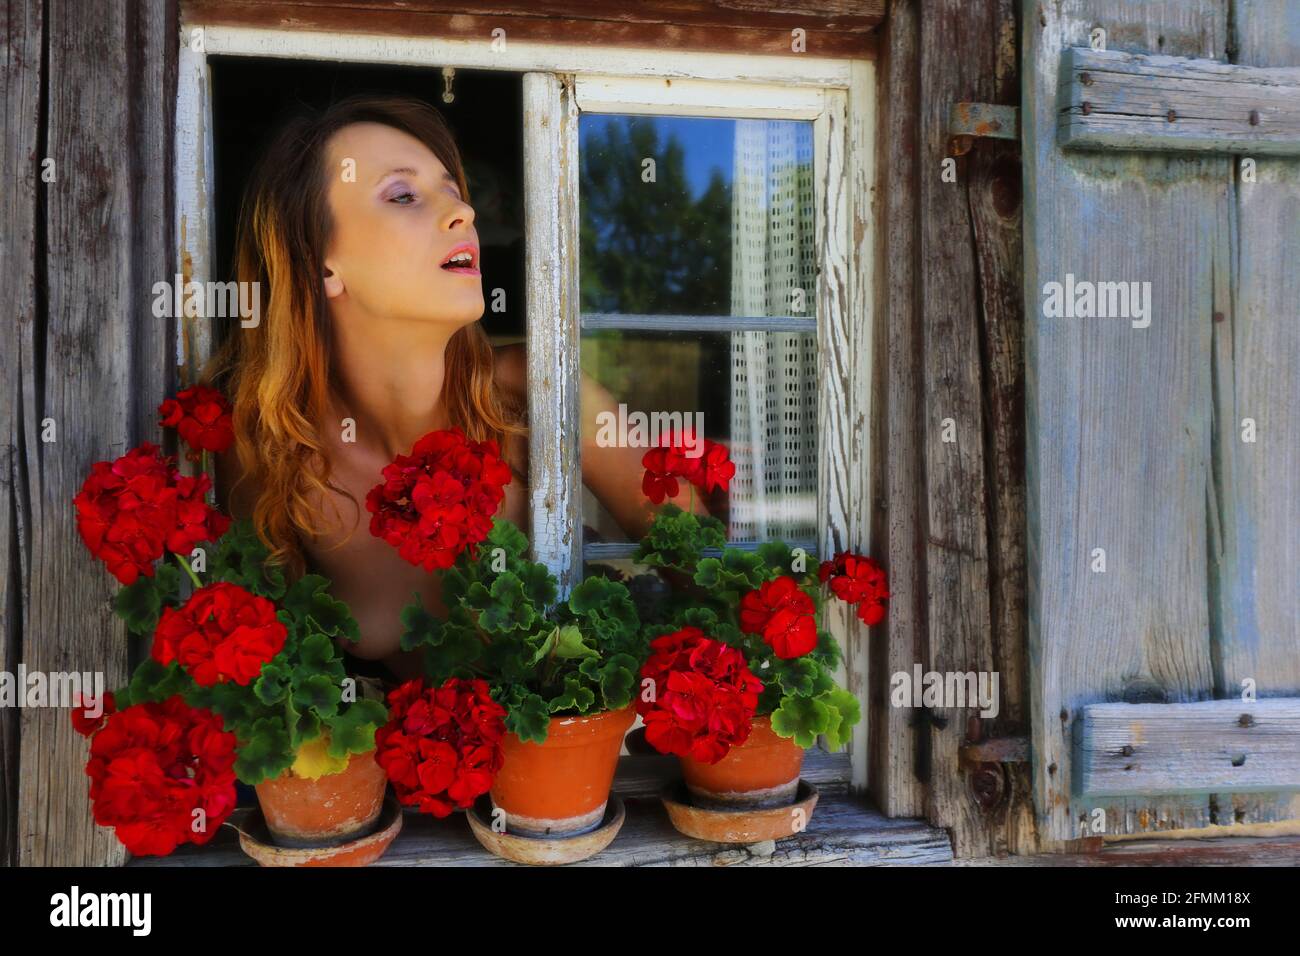 Nürnberg, Franken, Bayern, bezaubernd schöne junge Frau blickt aus alten Holzfenster mit Blumen am Fensterbrett Foto Stock